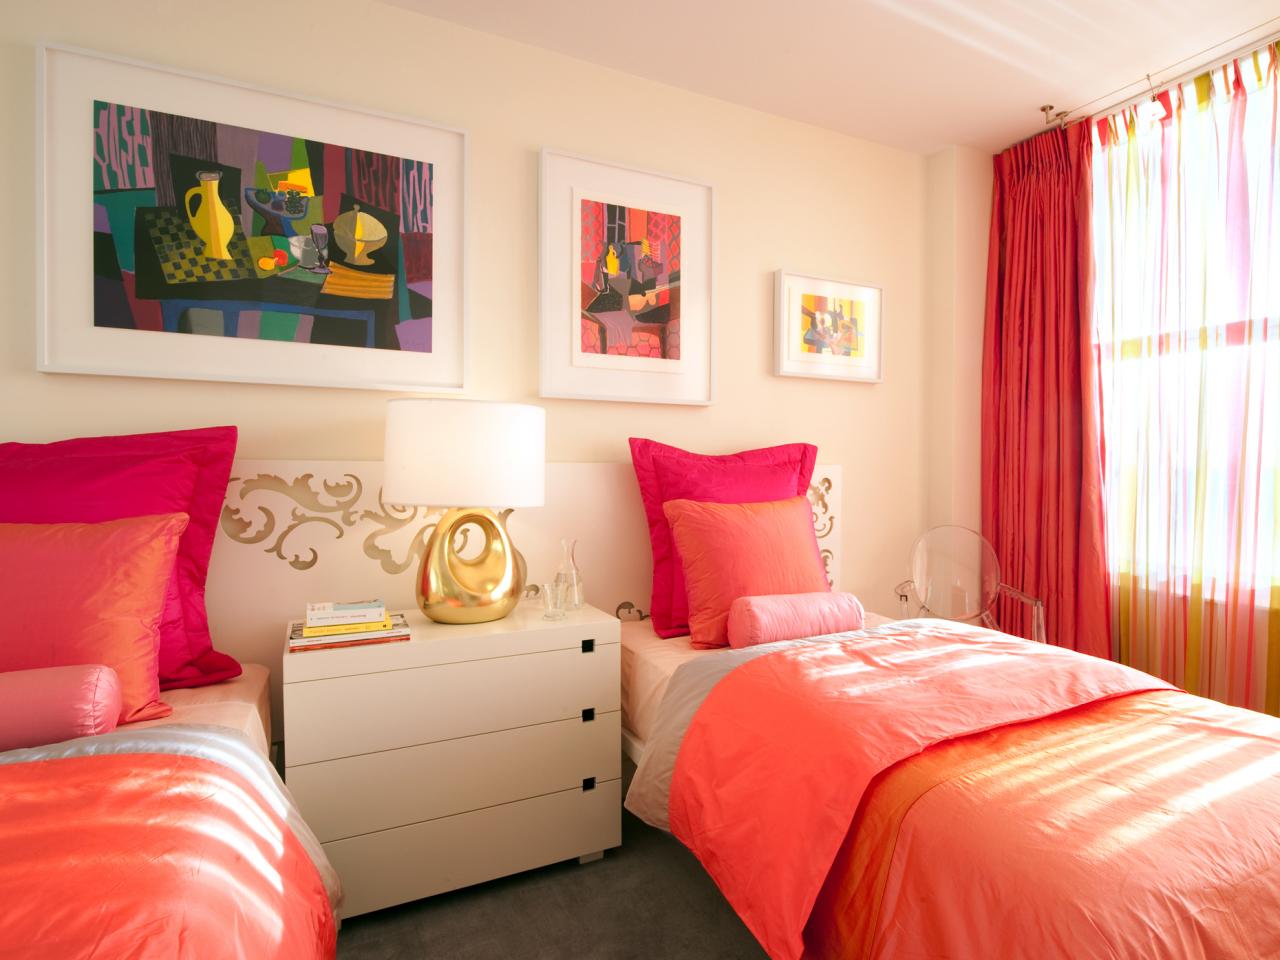 غرفة نوم أطفال مودرن 2019 بألوان زاهية تناسب ذوق الفتيات